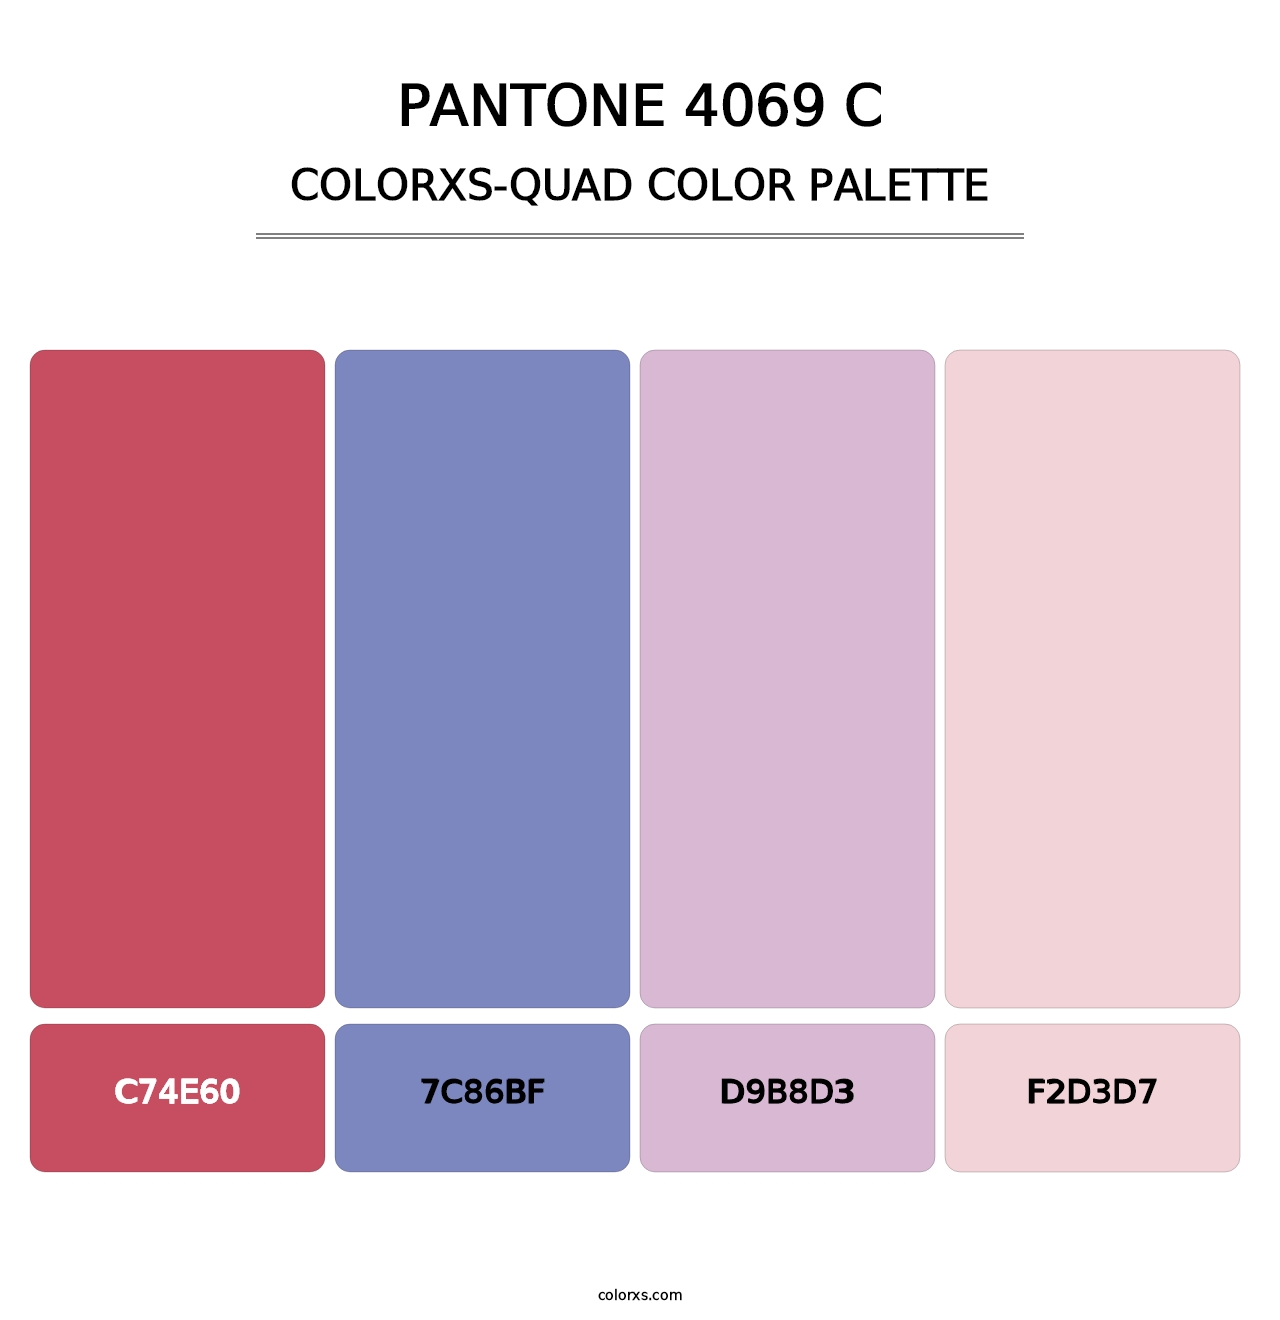 PANTONE 4069 C - Colorxs Quad Palette